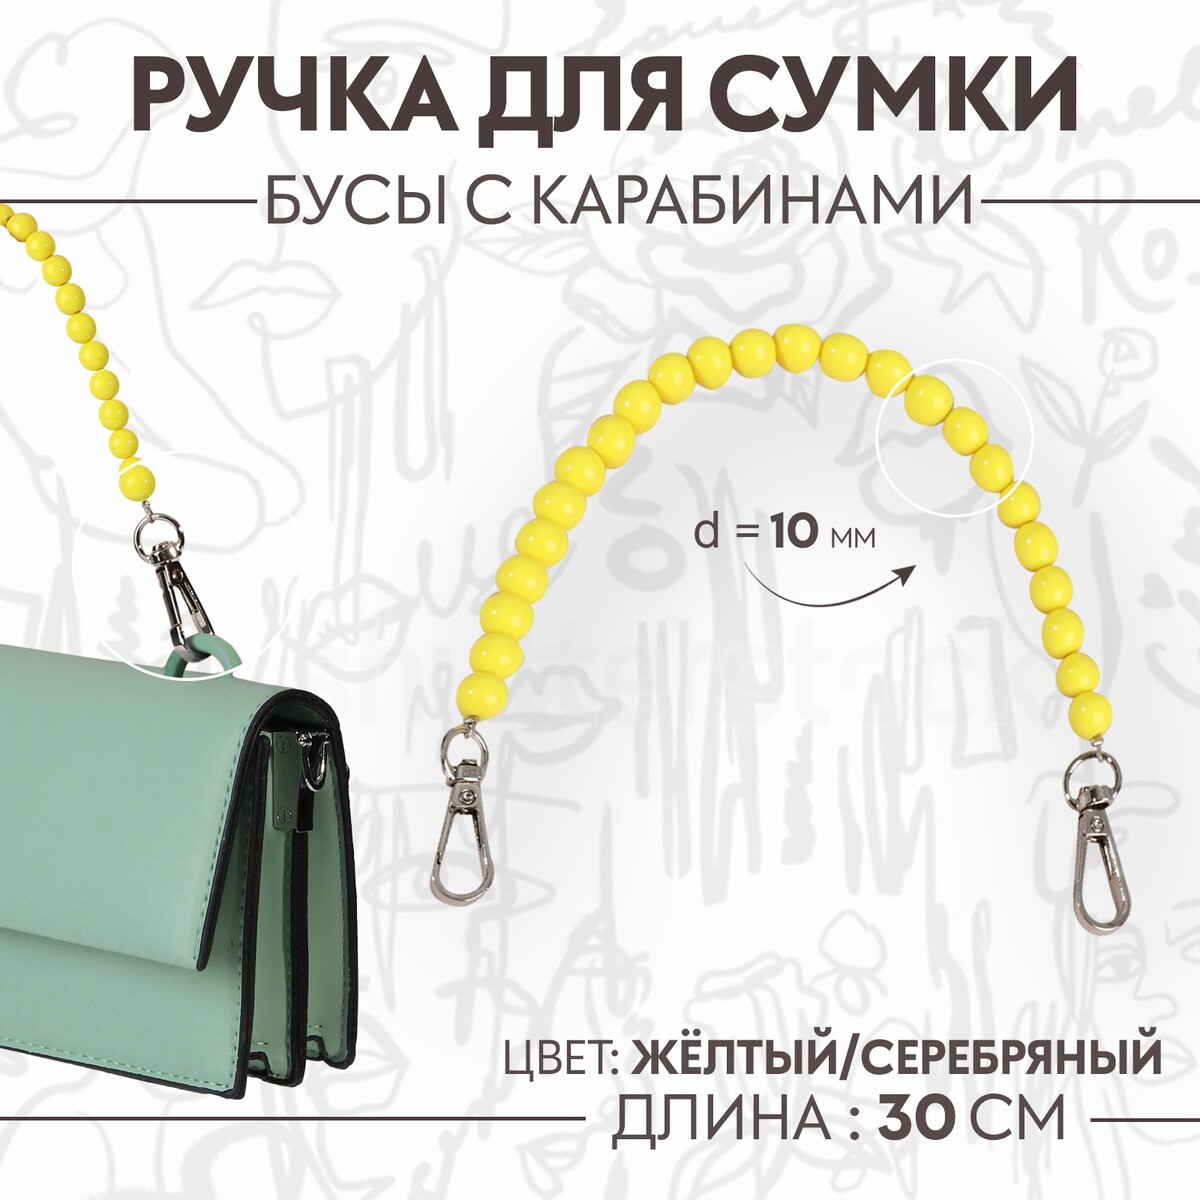 Ручка для сумки, бусы, d = 10 мм, 30 см, цвет желтый